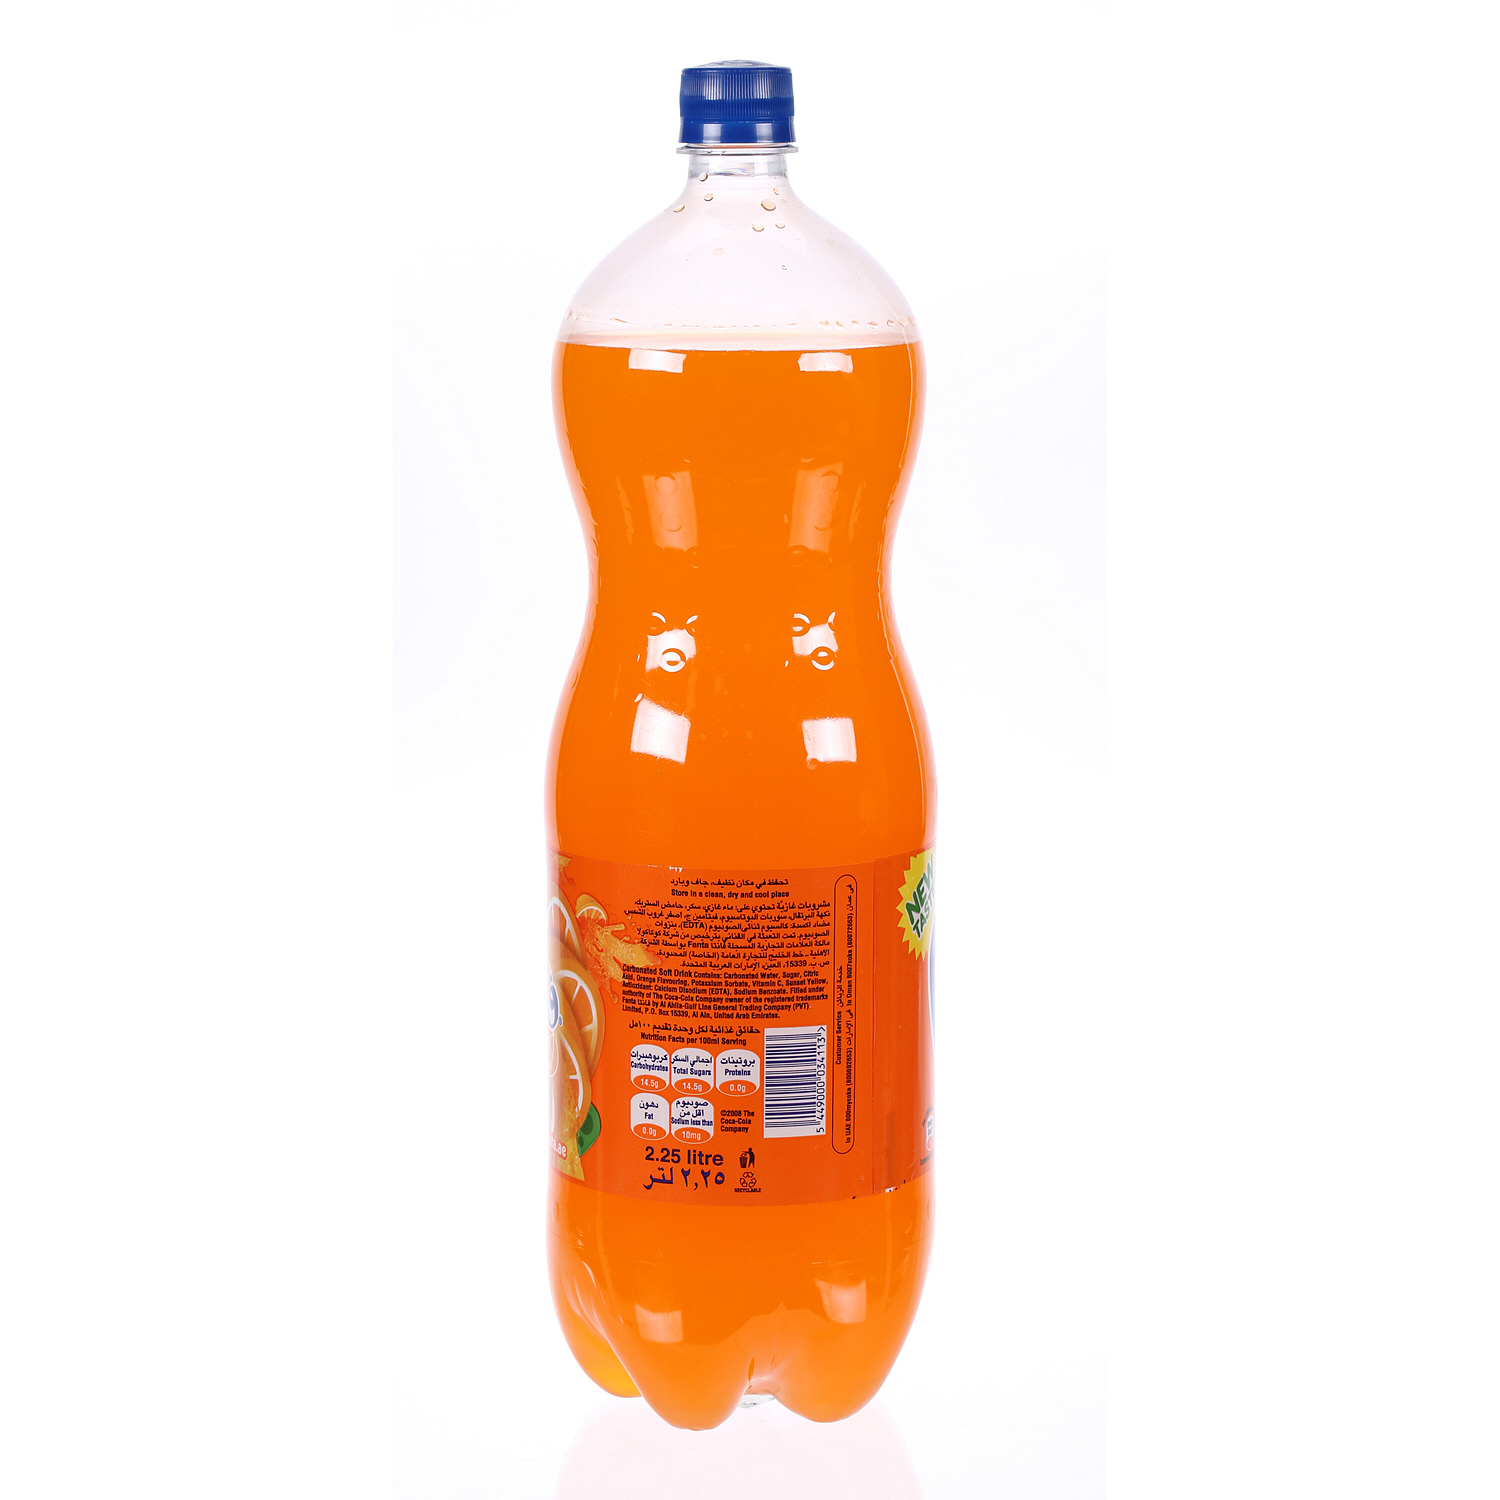 Fanta Orange 2.25 L